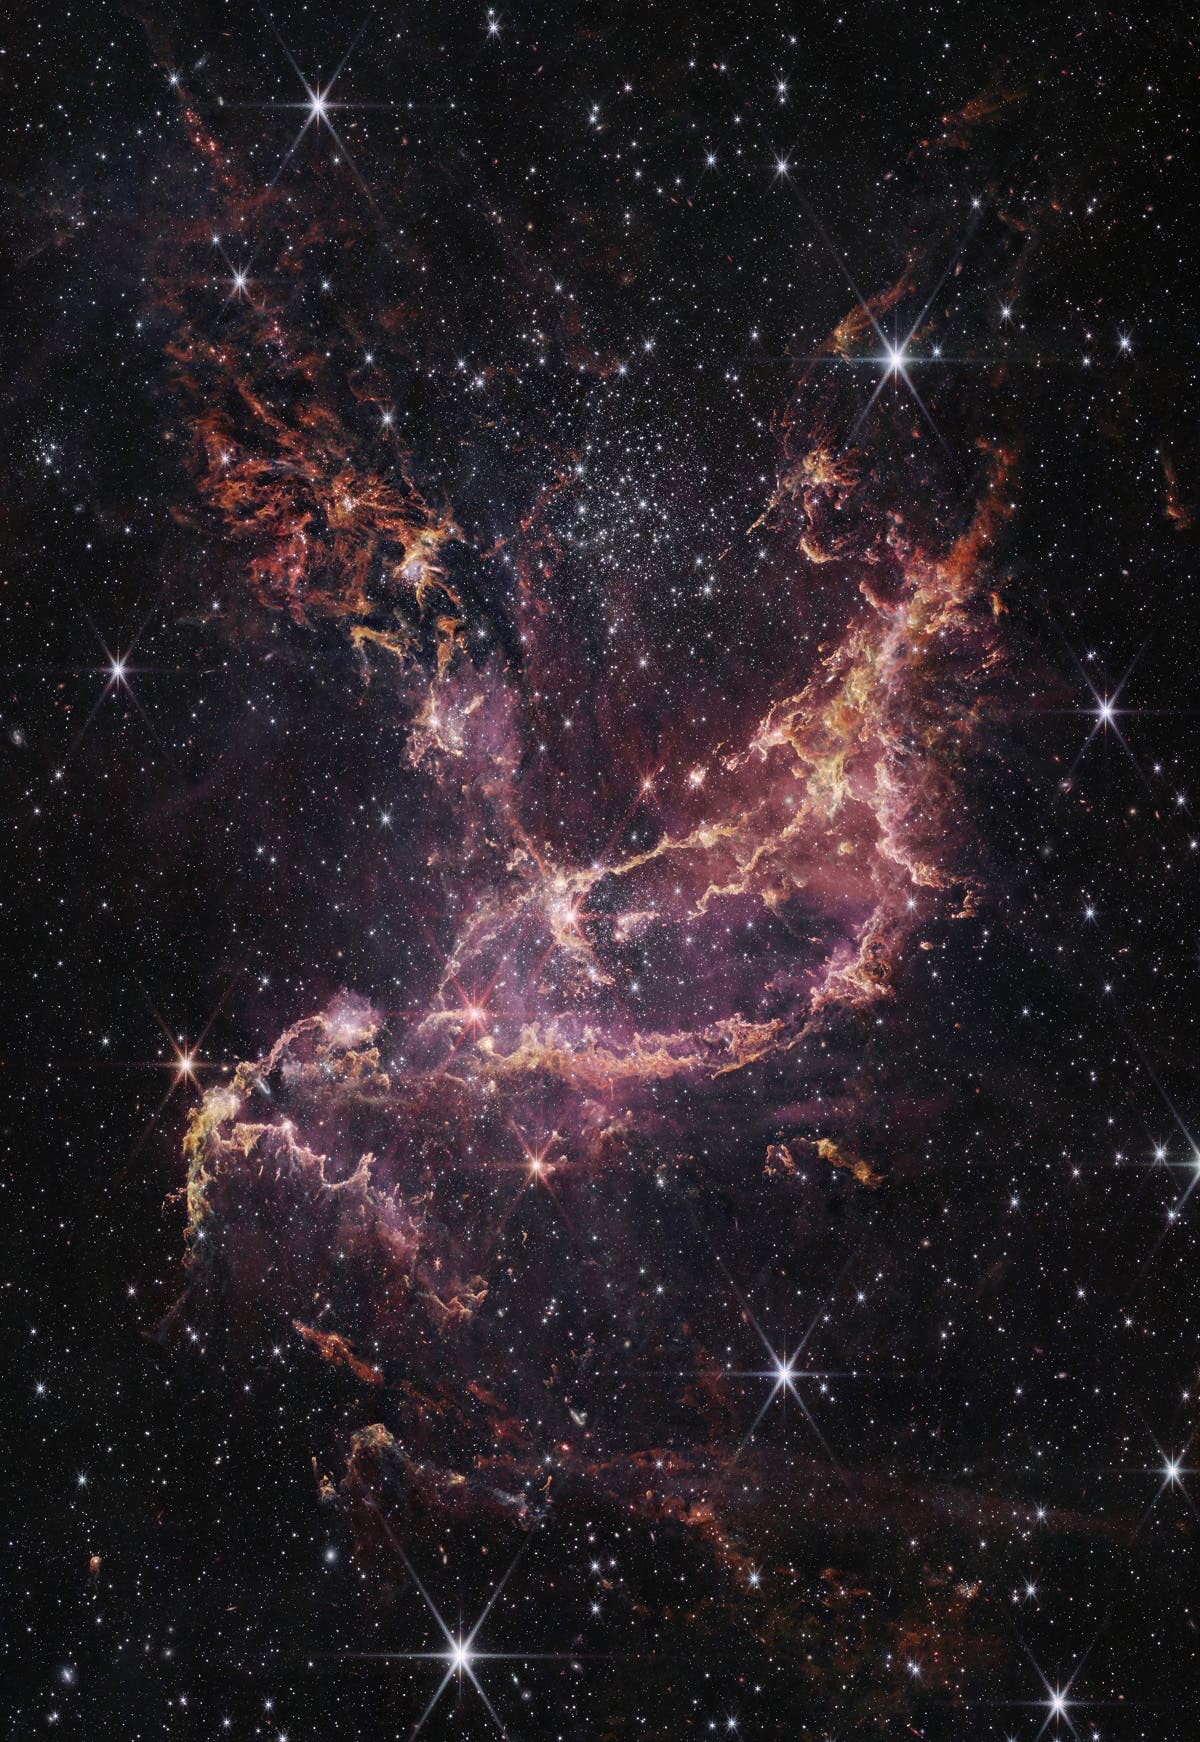 Telescopio James Webb descubre polvo estelar en una región cercana a la Vía Láctea